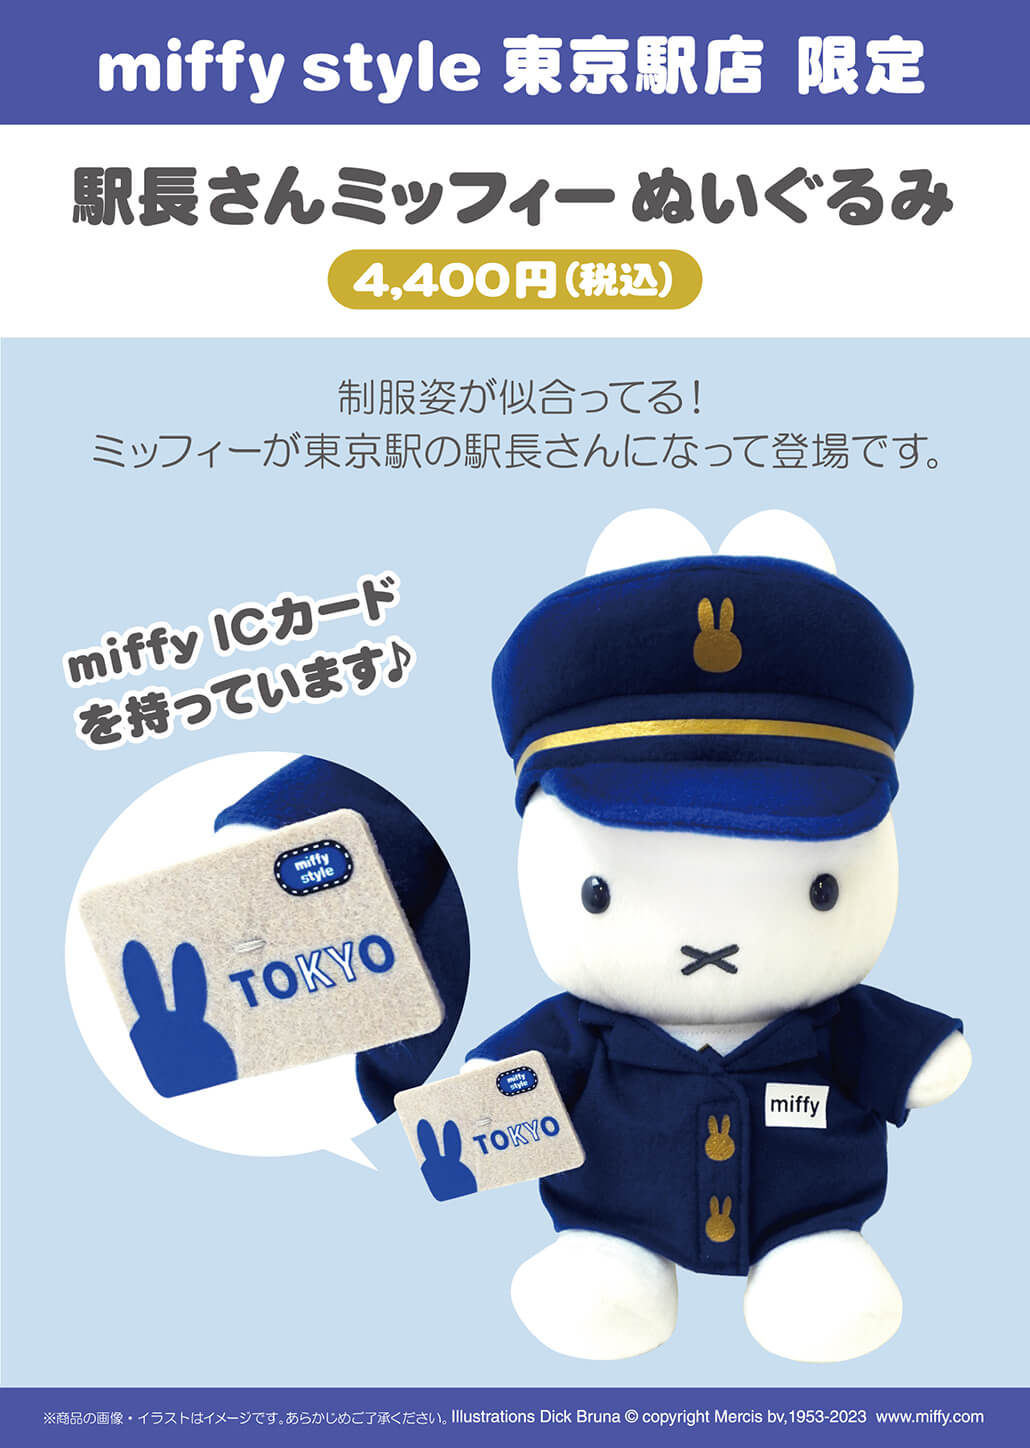 2023.07.08追記）2023年7月8日(土)発売予定!miffy style 東京駅店限定 ...